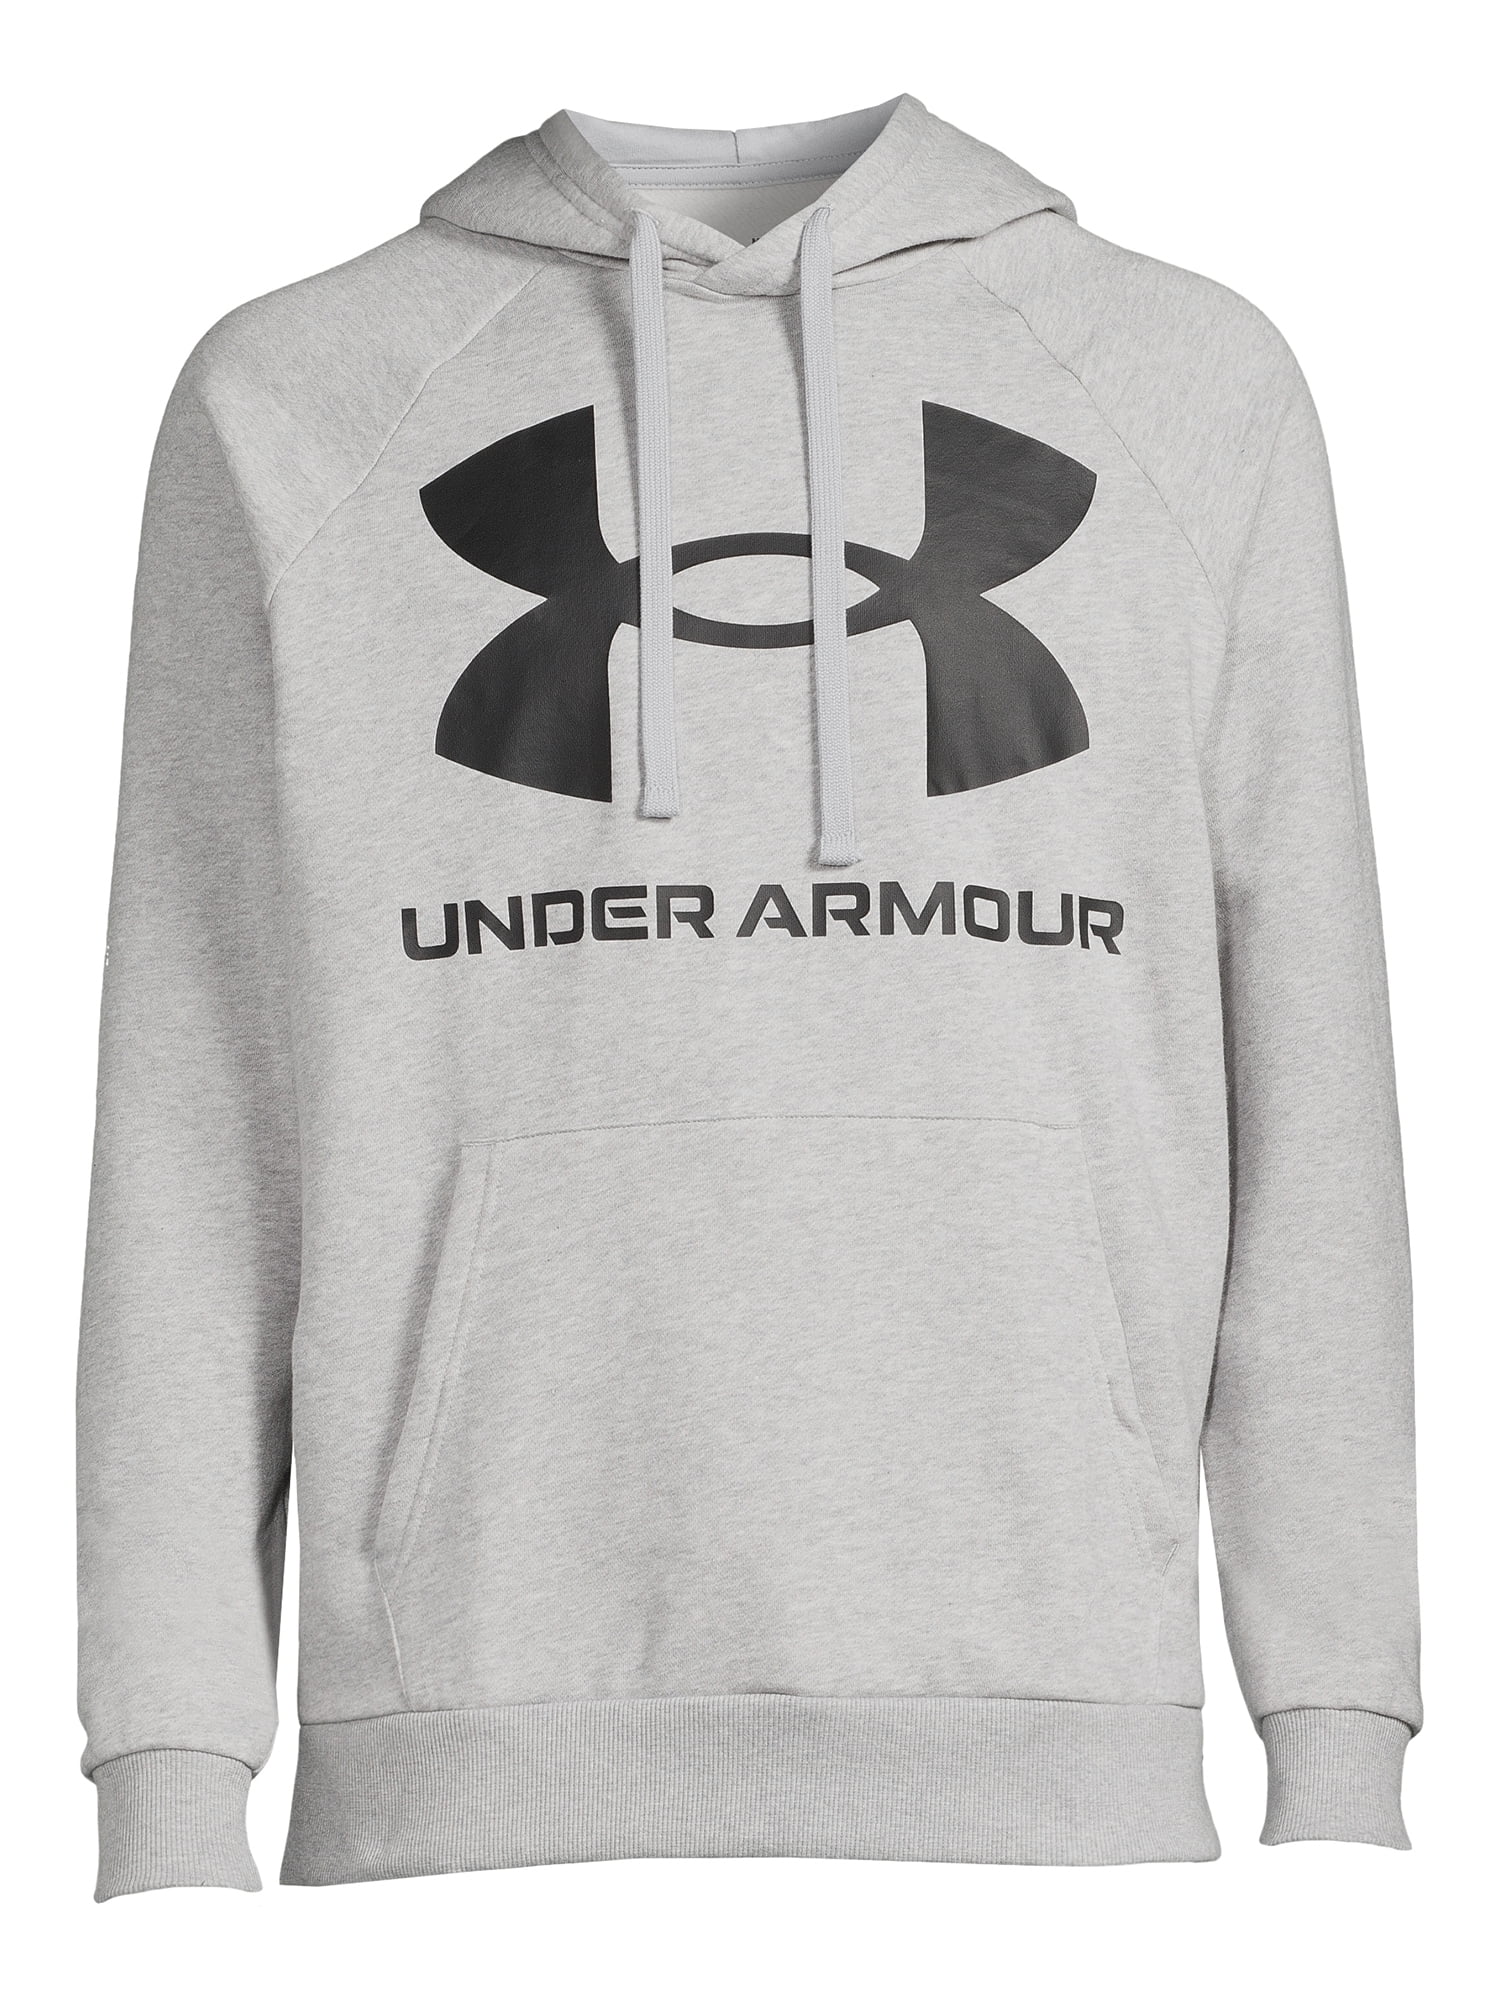 Under Armour, Uomini, Felpa + Maglione, Rival Fleece Big Logo